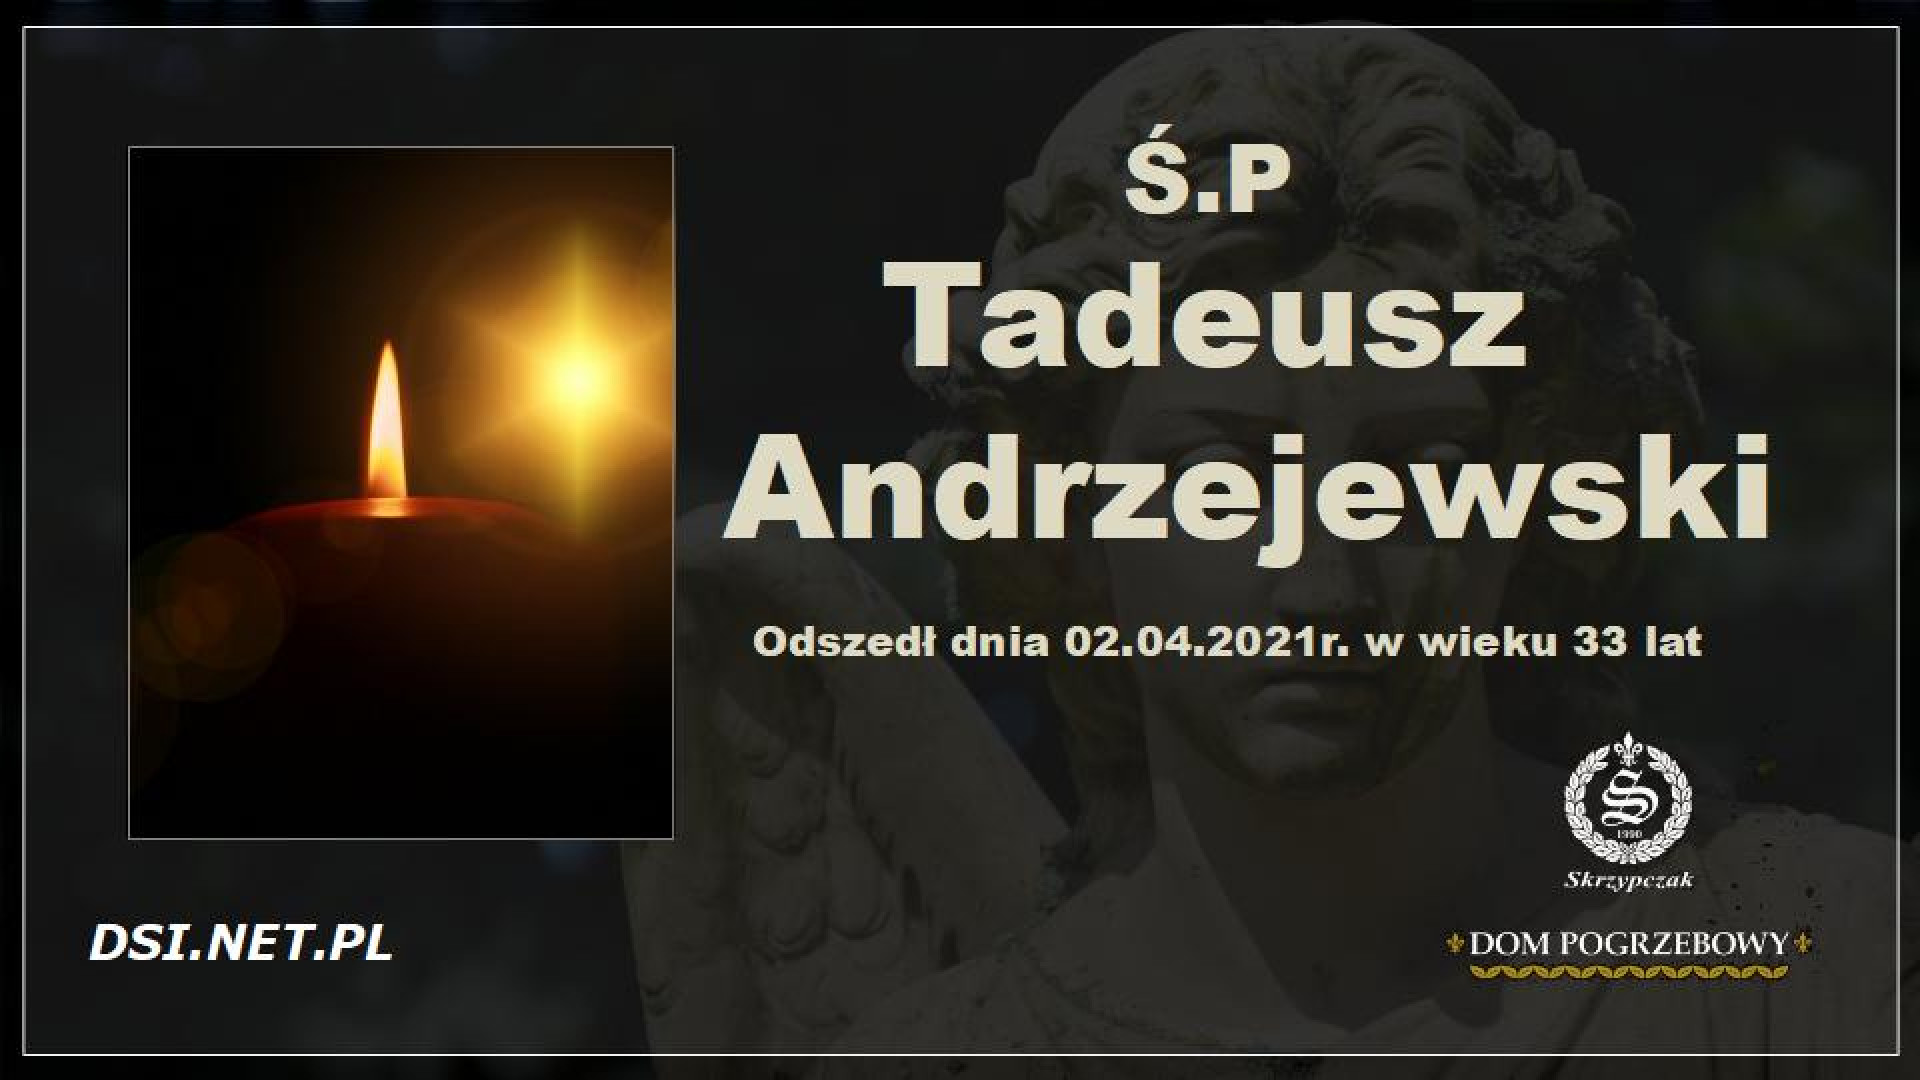 Ś.P. Tadeusz Andrzejewski